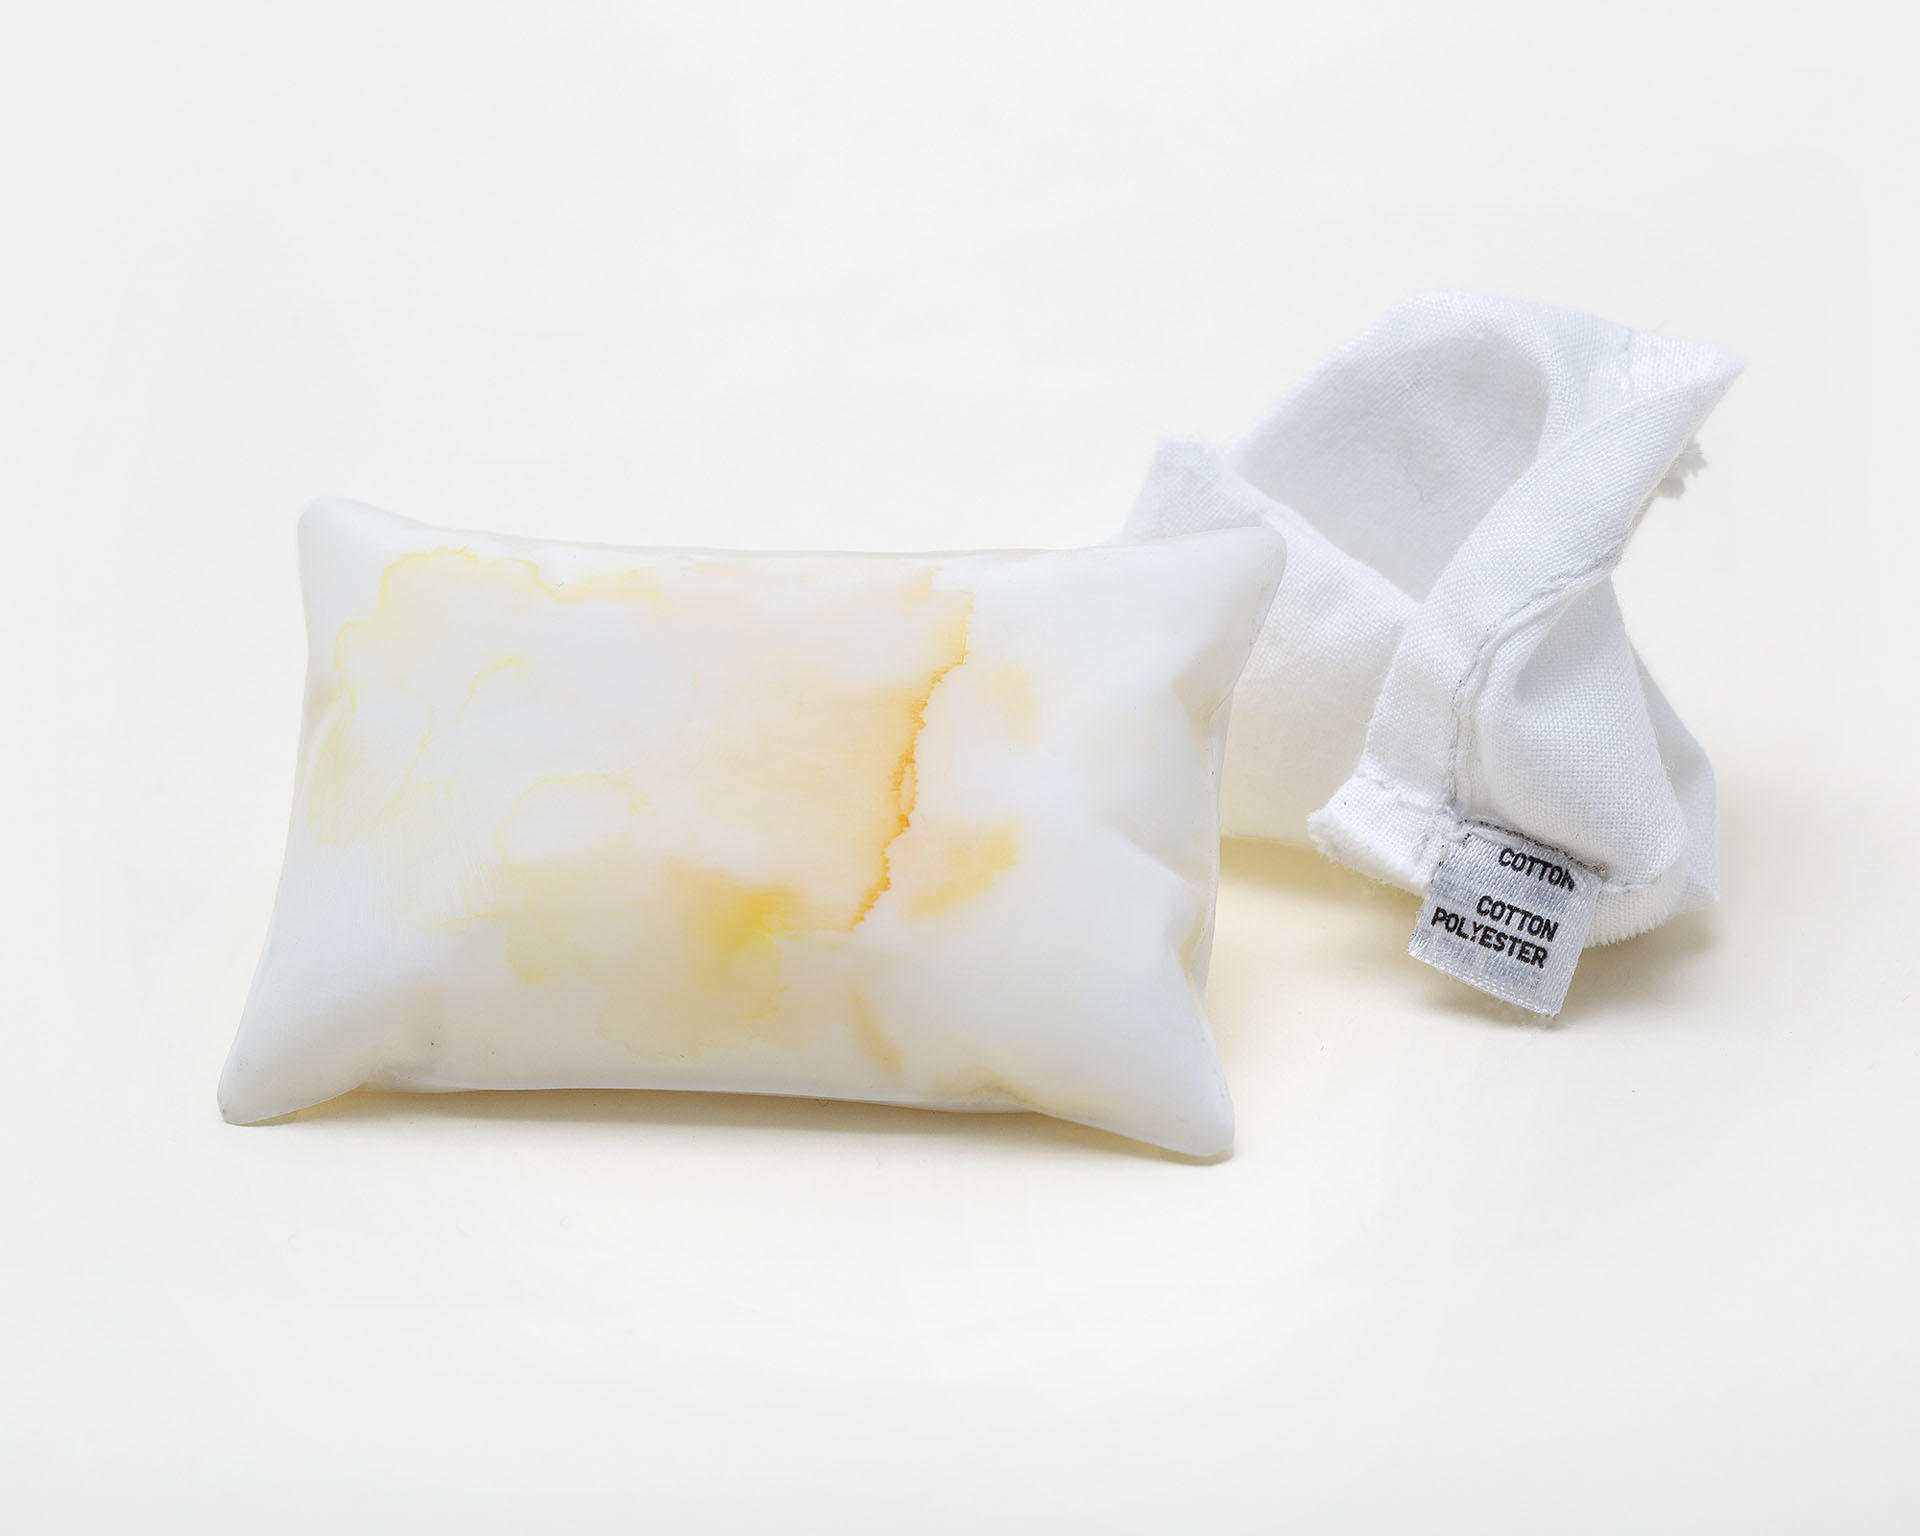 베개 [begae] (Pillow) is a brooch